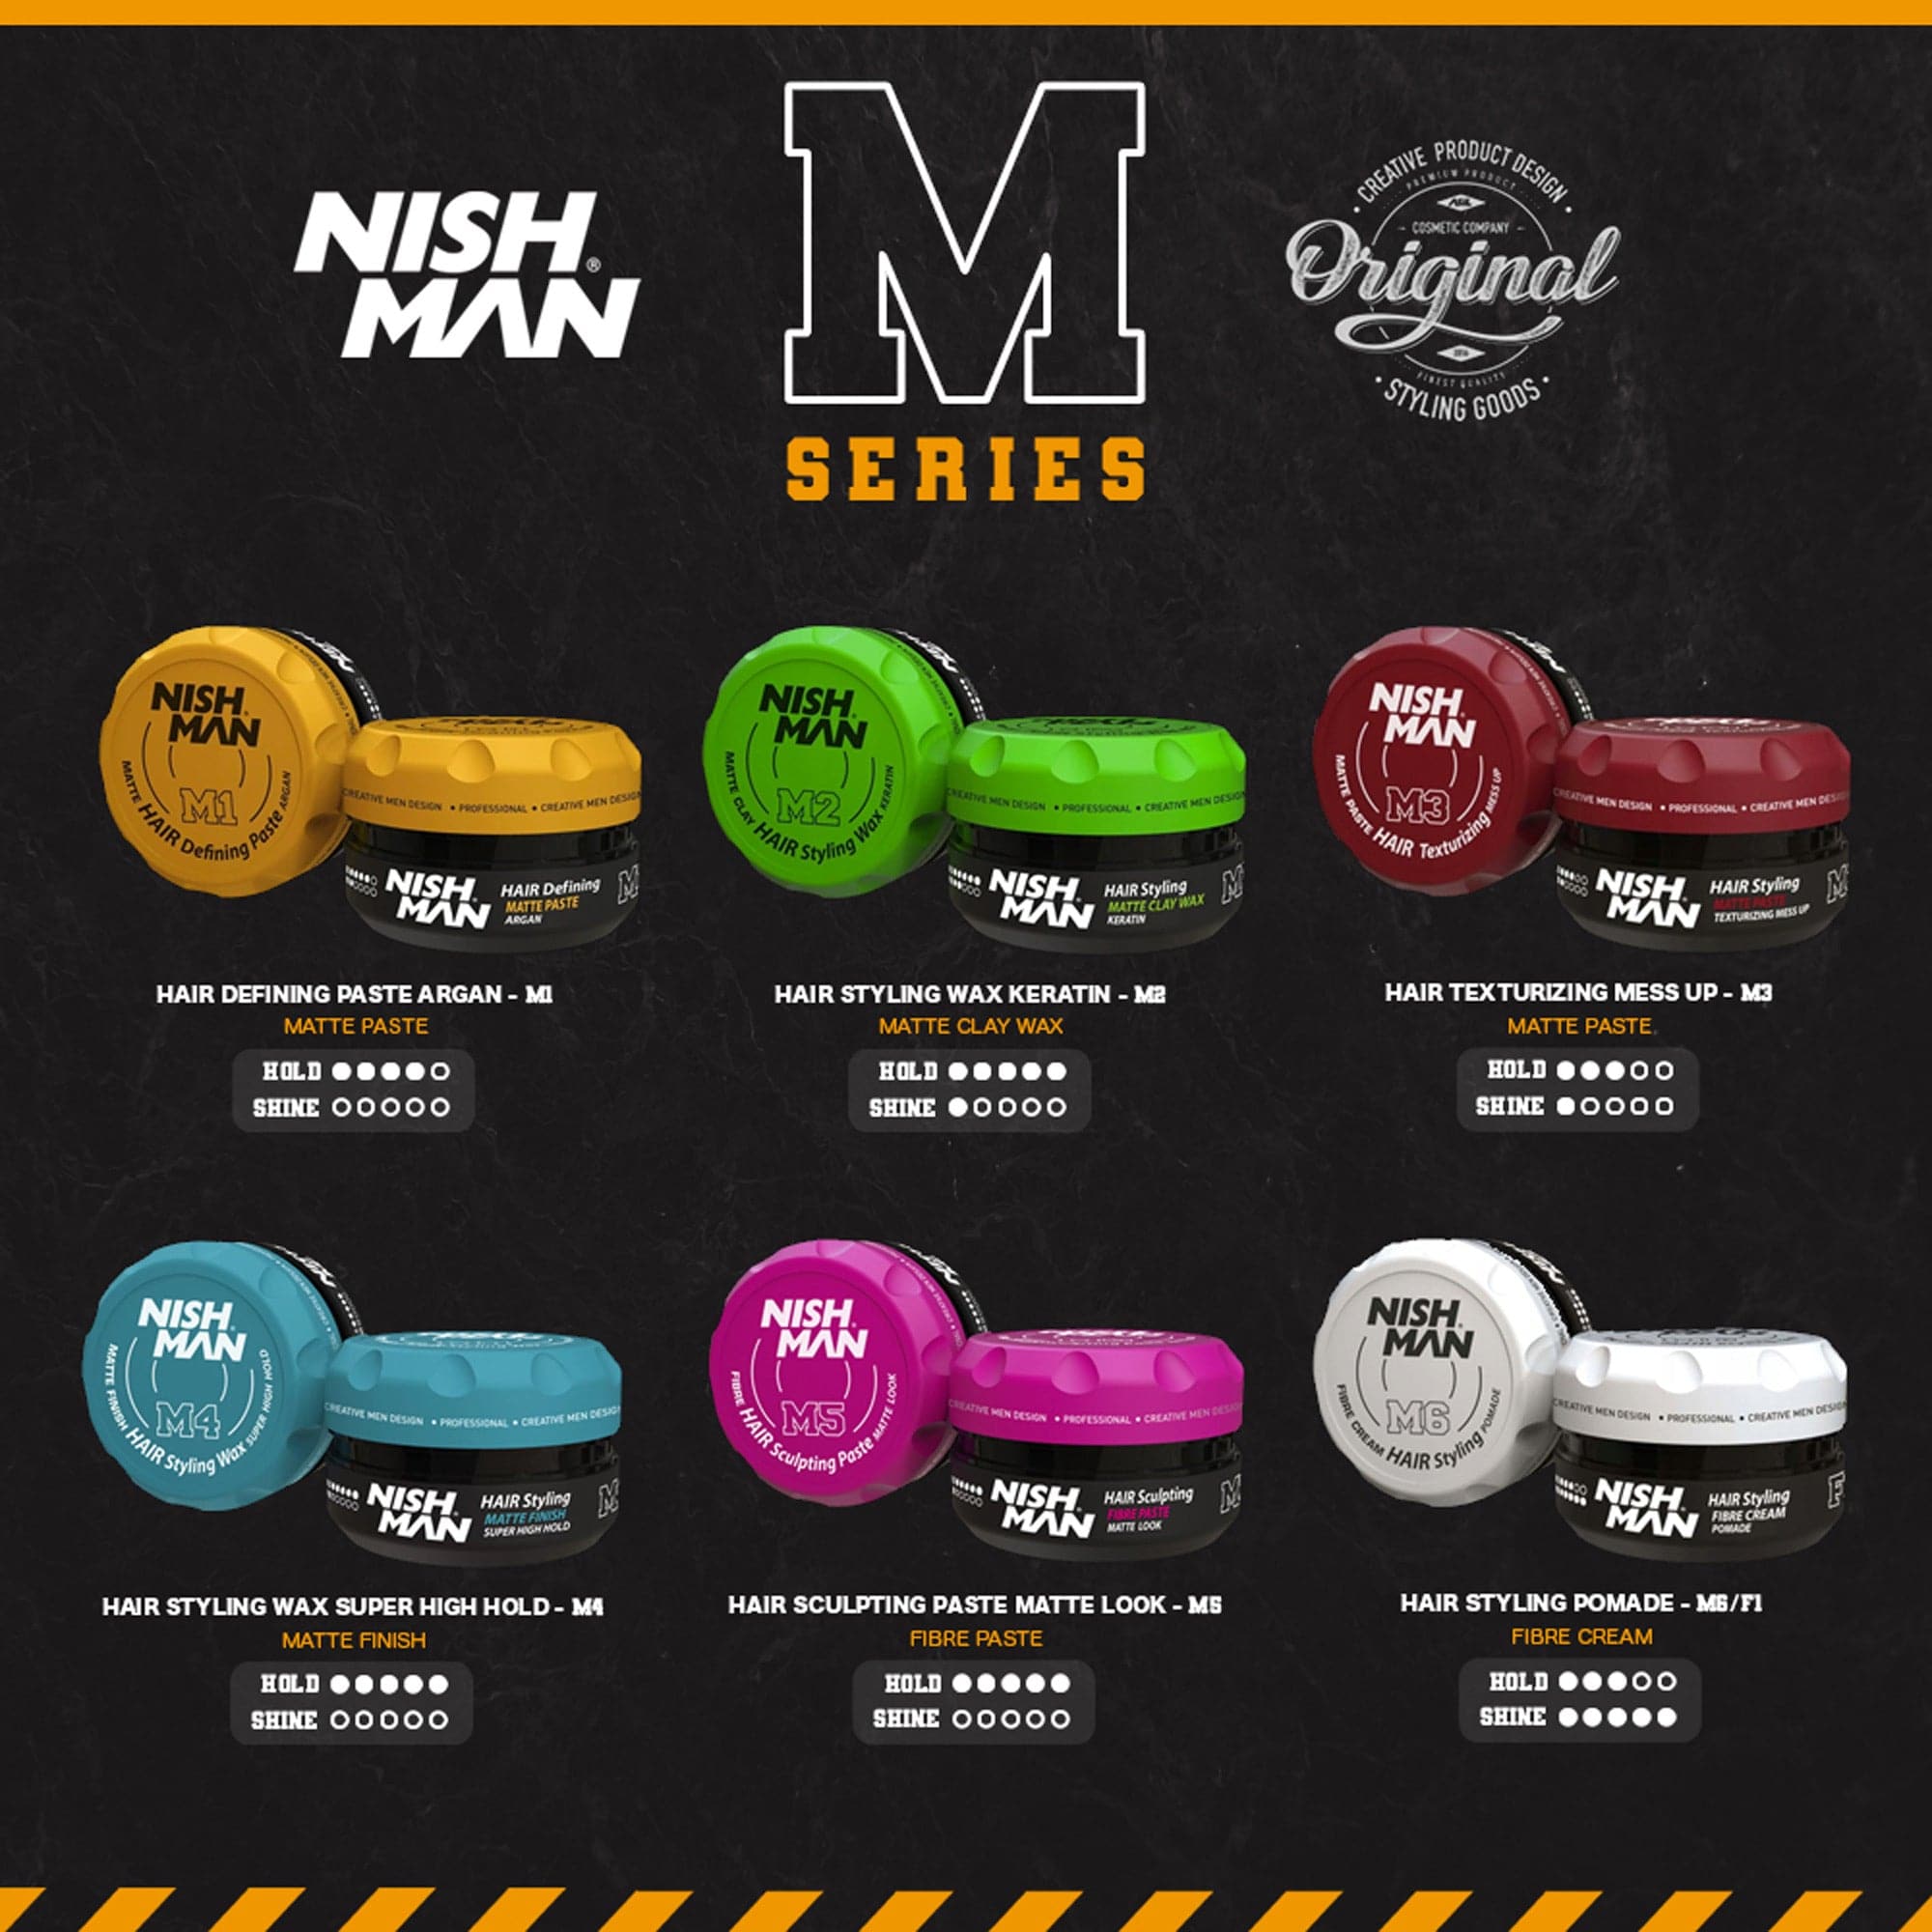 Nishman - Hair Styling Wax M4 Matte Finish Super High Hold 100ml